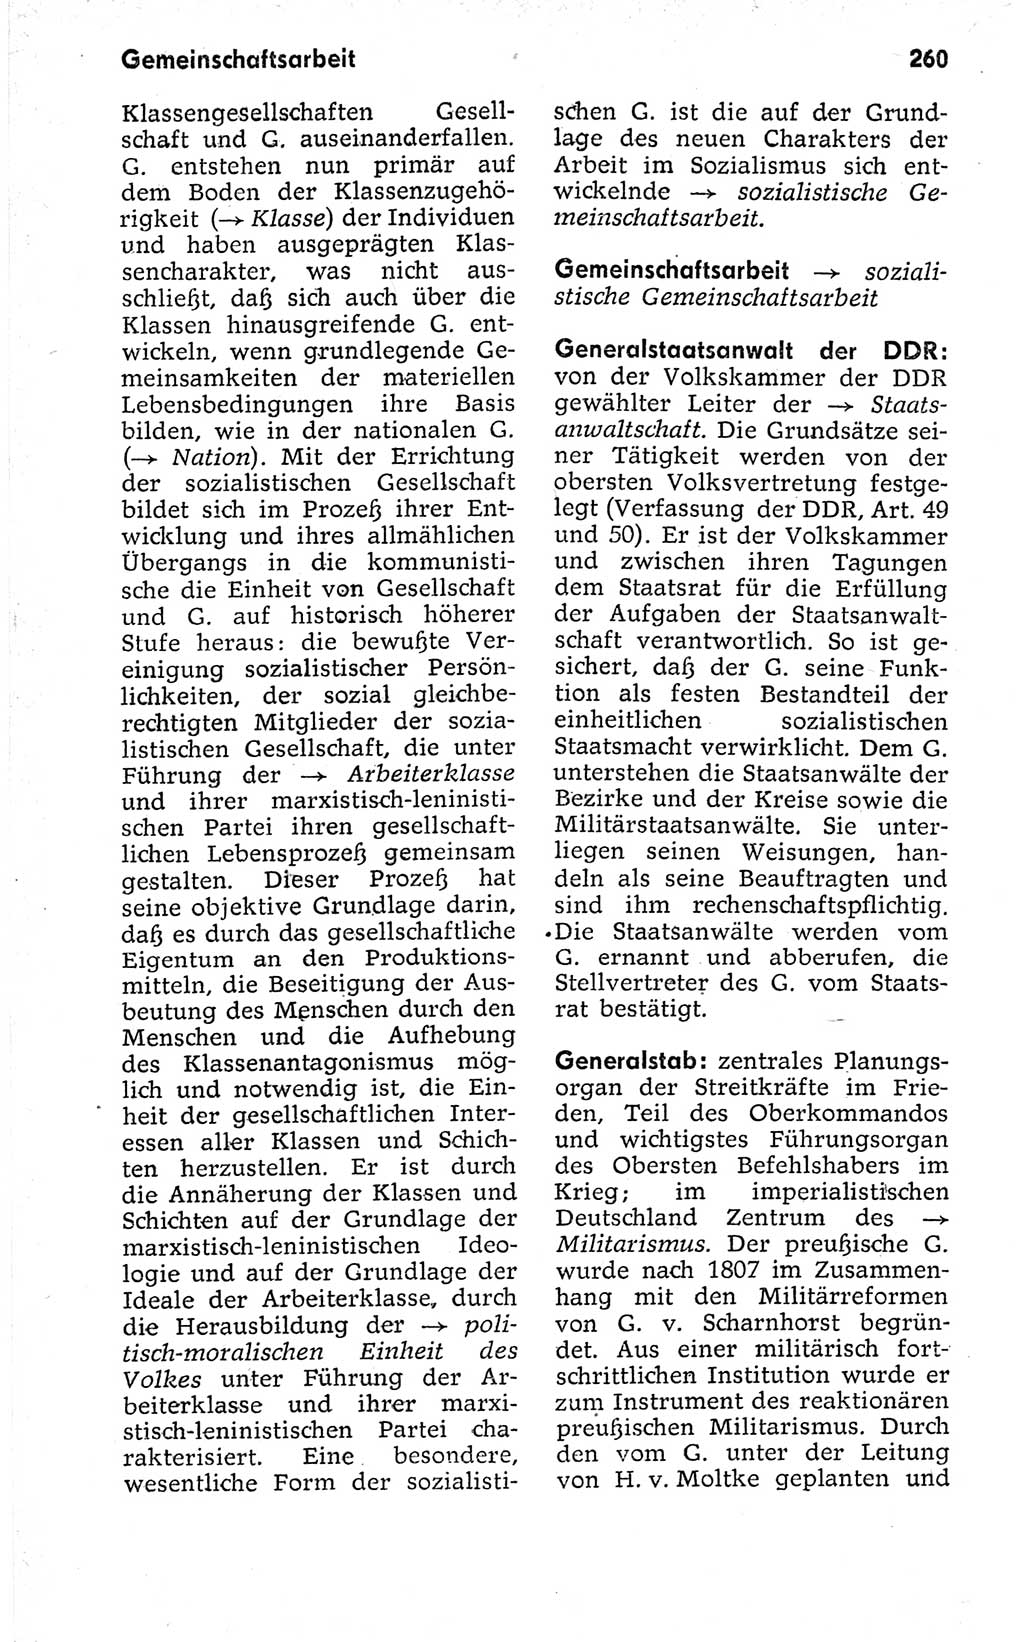 Kleines politisches Wörterbuch [Deutsche Demokratische Republik (DDR)] 1973, Seite 260 (Kl. pol. Wb. DDR 1973, S. 260)